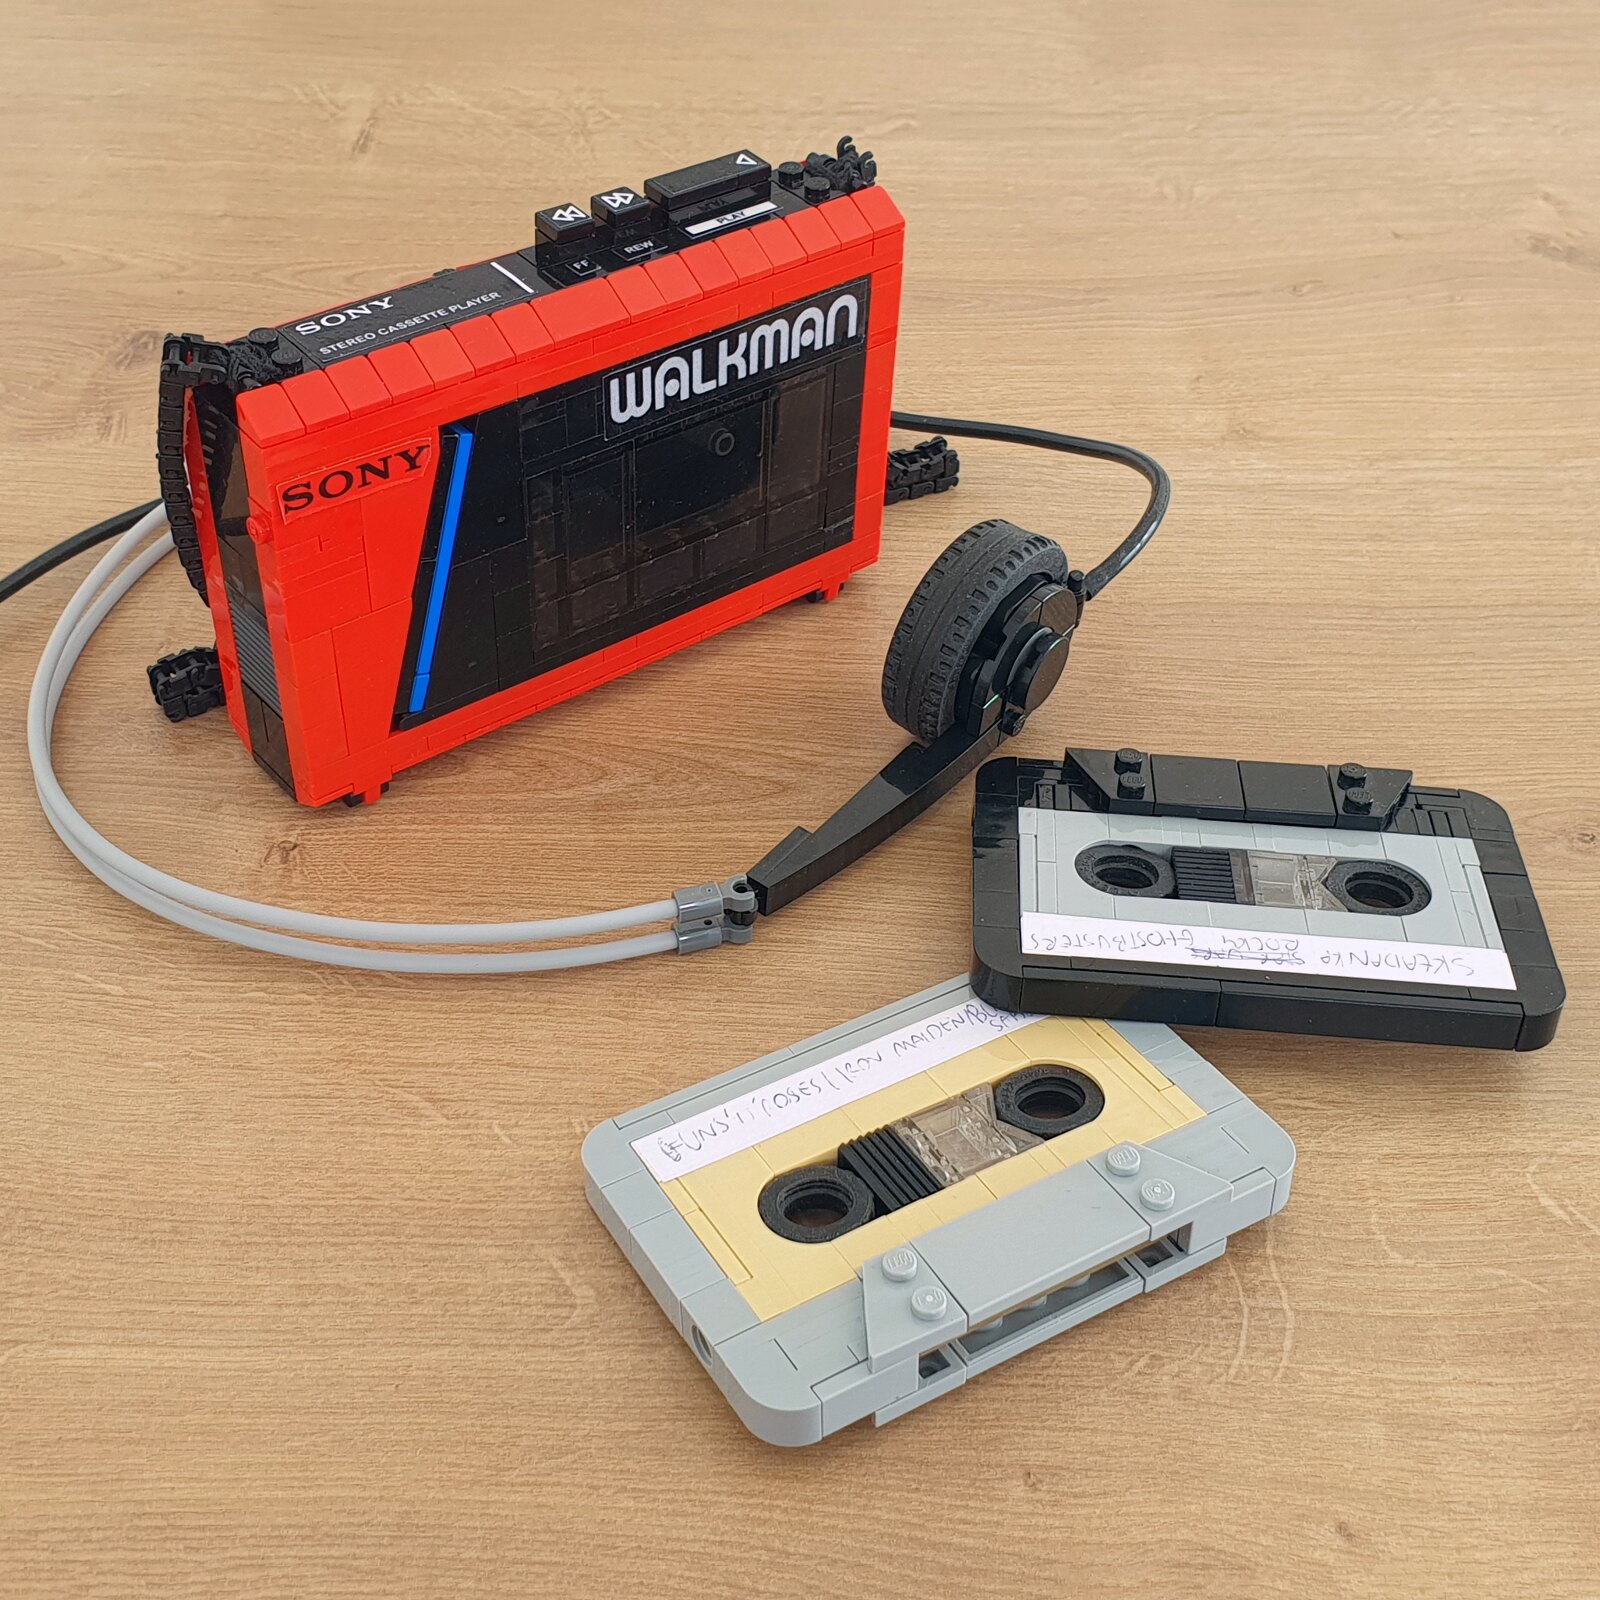 Złote Study: dogrywka – lata 80te: Walkman!